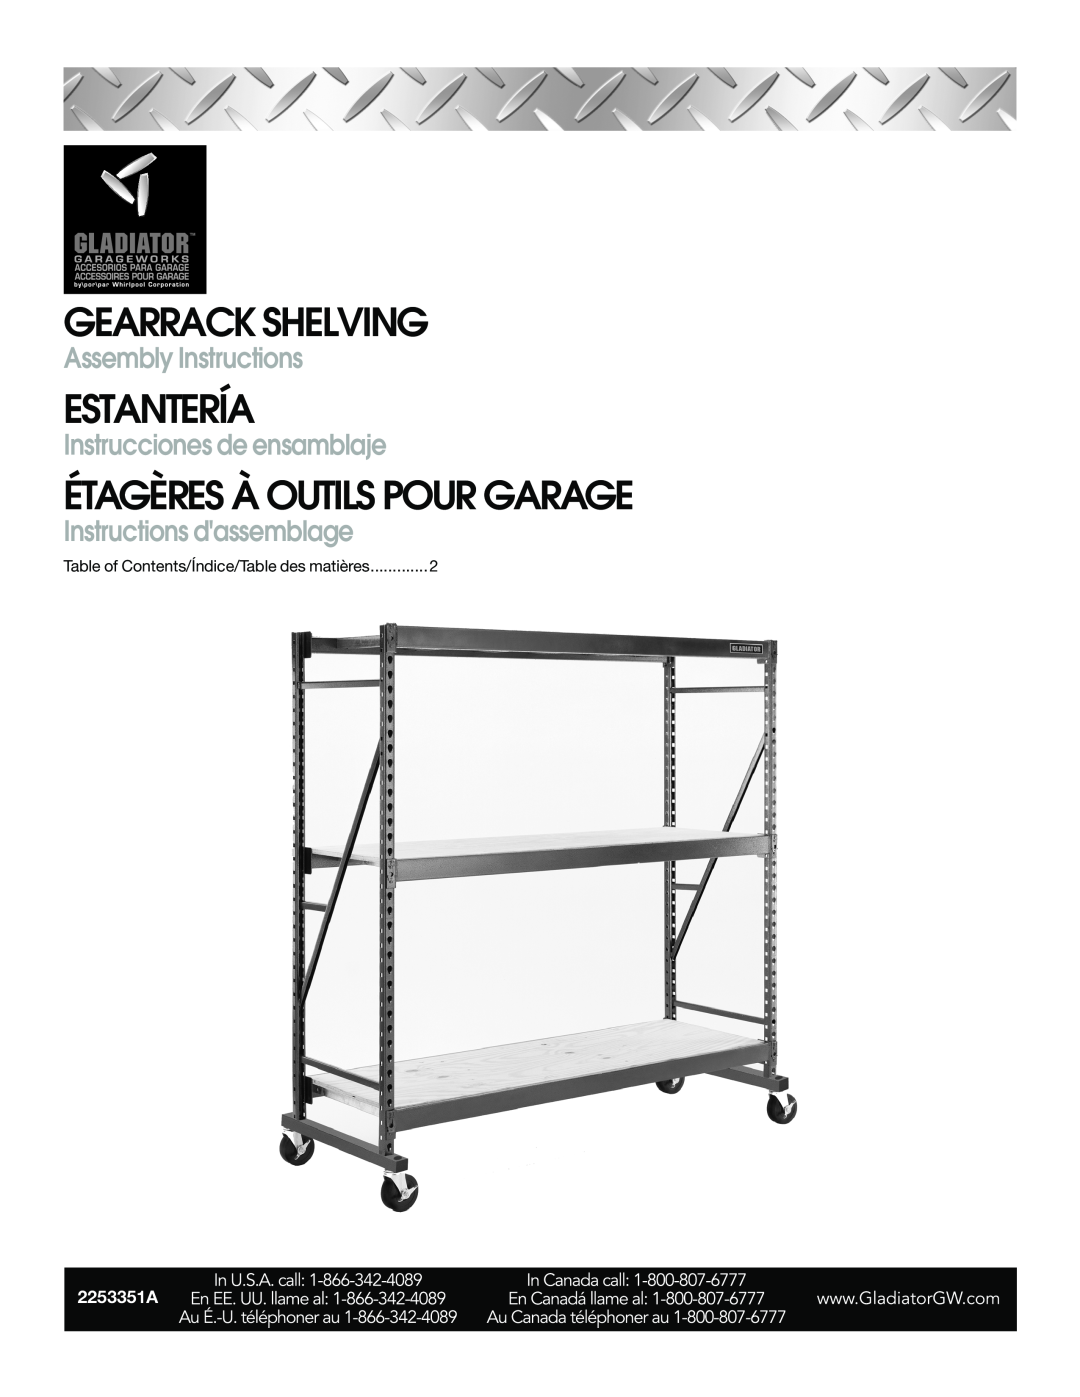 Gladiator Garageworks 2253351A manual Gearrack Shelving, Estantería, Étagères À Outils Pour Garage, Assembly Instructions 